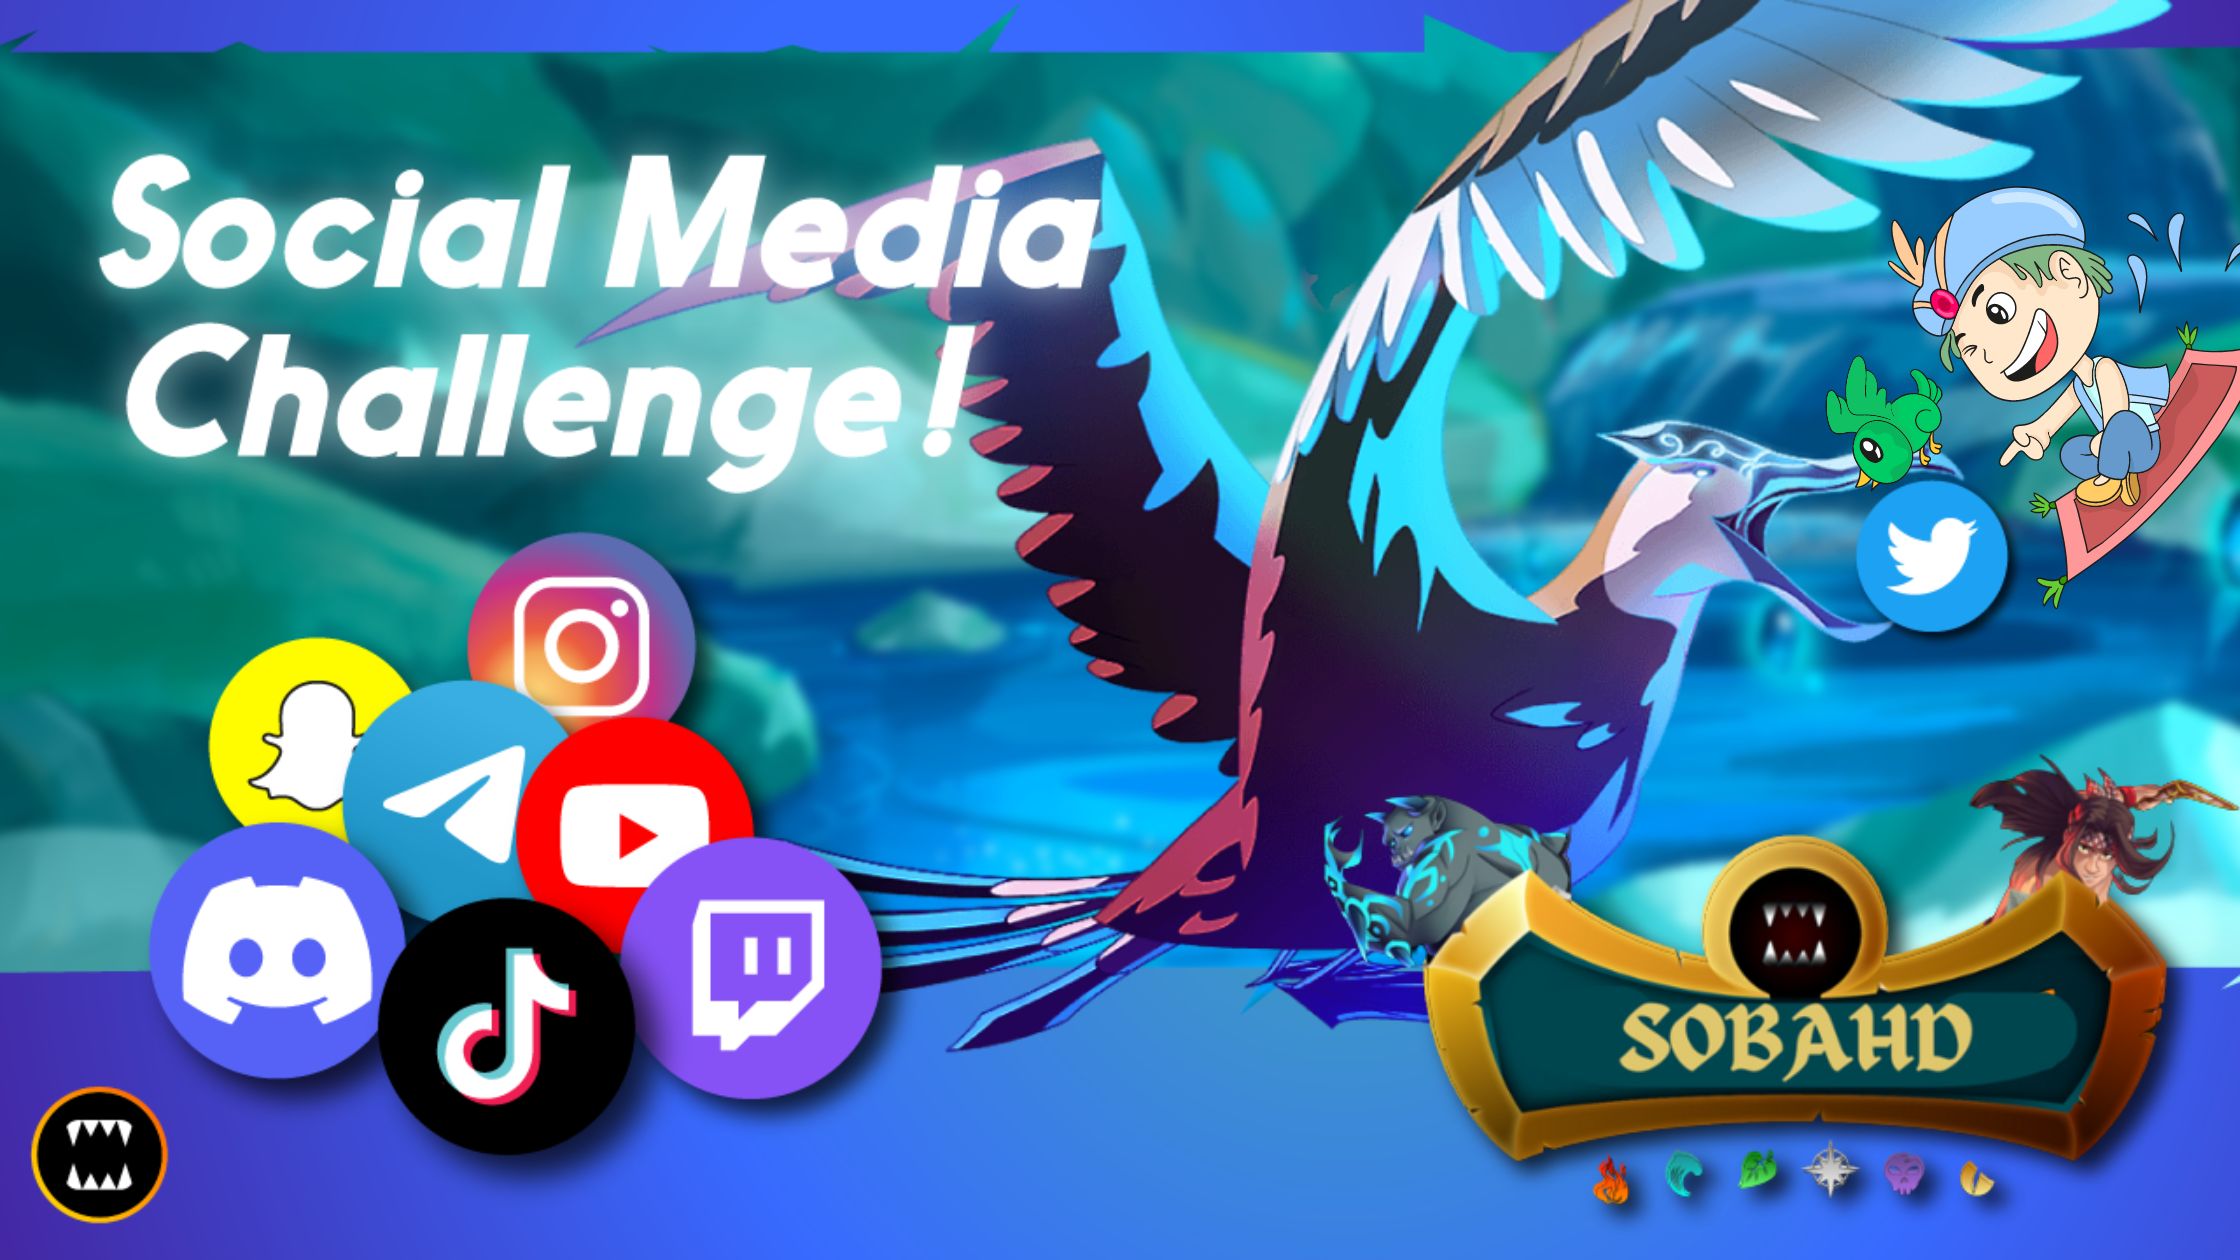 Social Media Challenge thumbnail.jpg